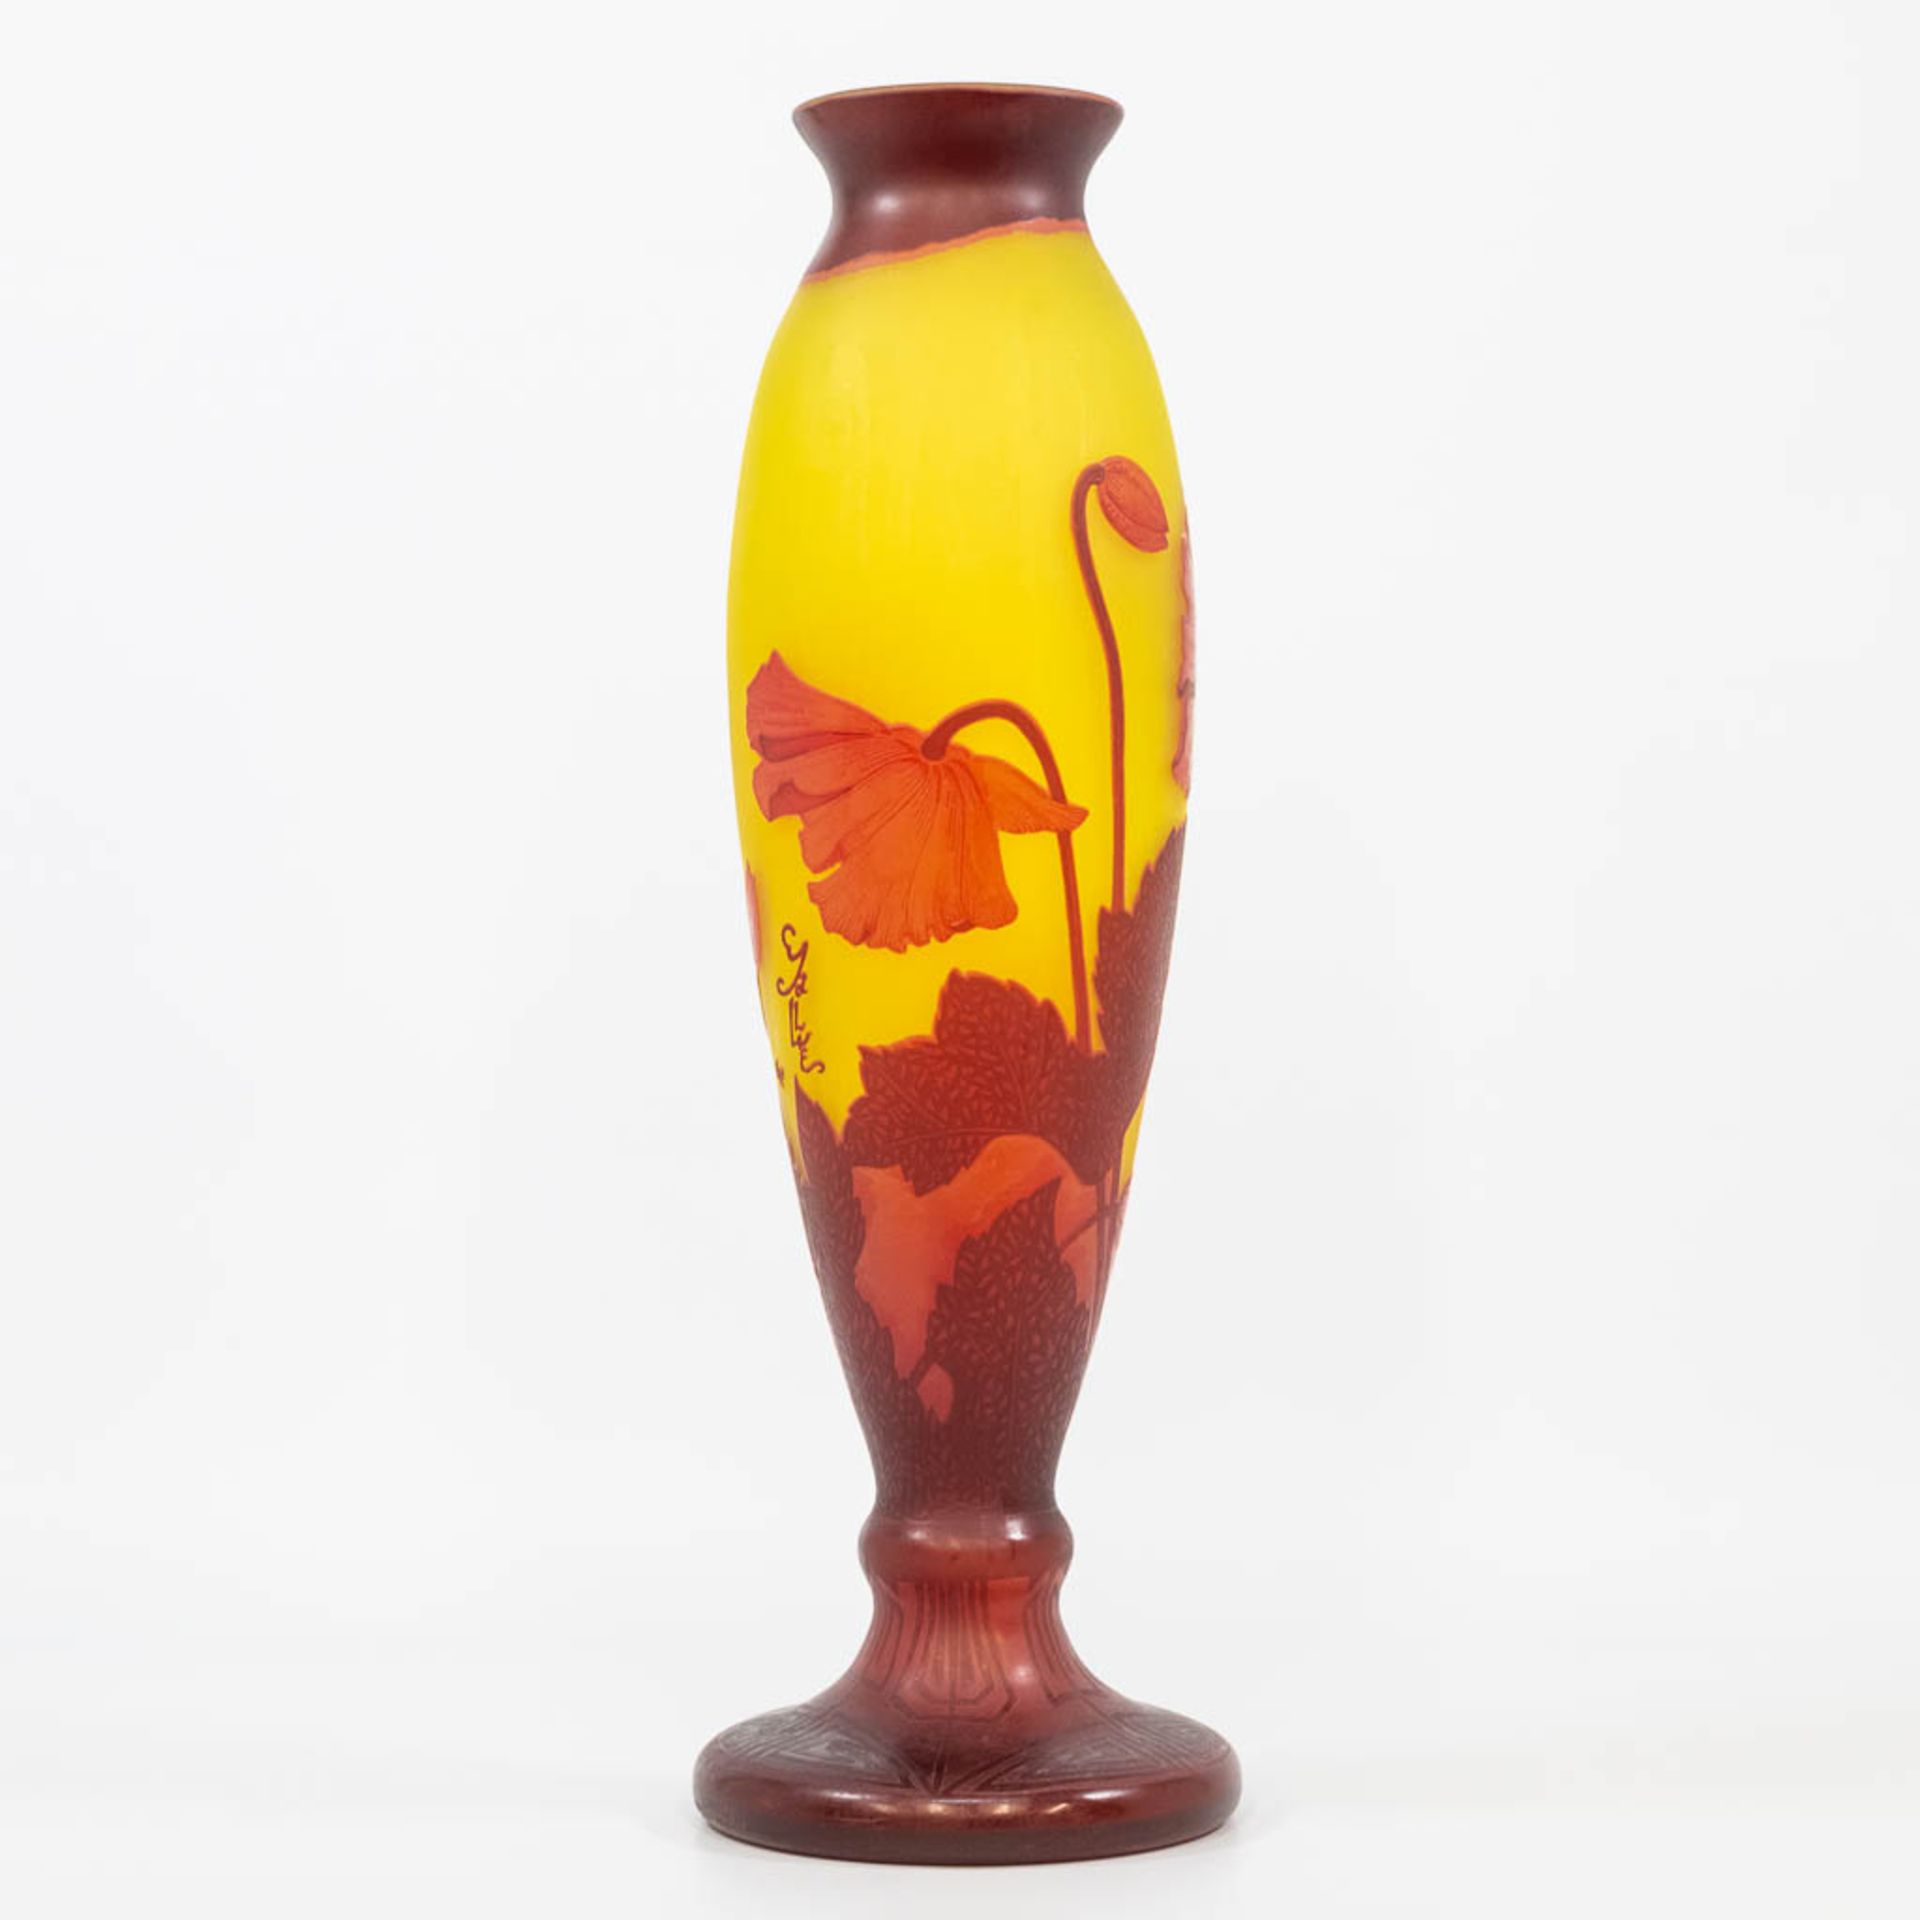 A p‰te de verre art nouveau display vase, Tip Emile GallŽ. (51 x 16 cm) - Bild 4 aus 13